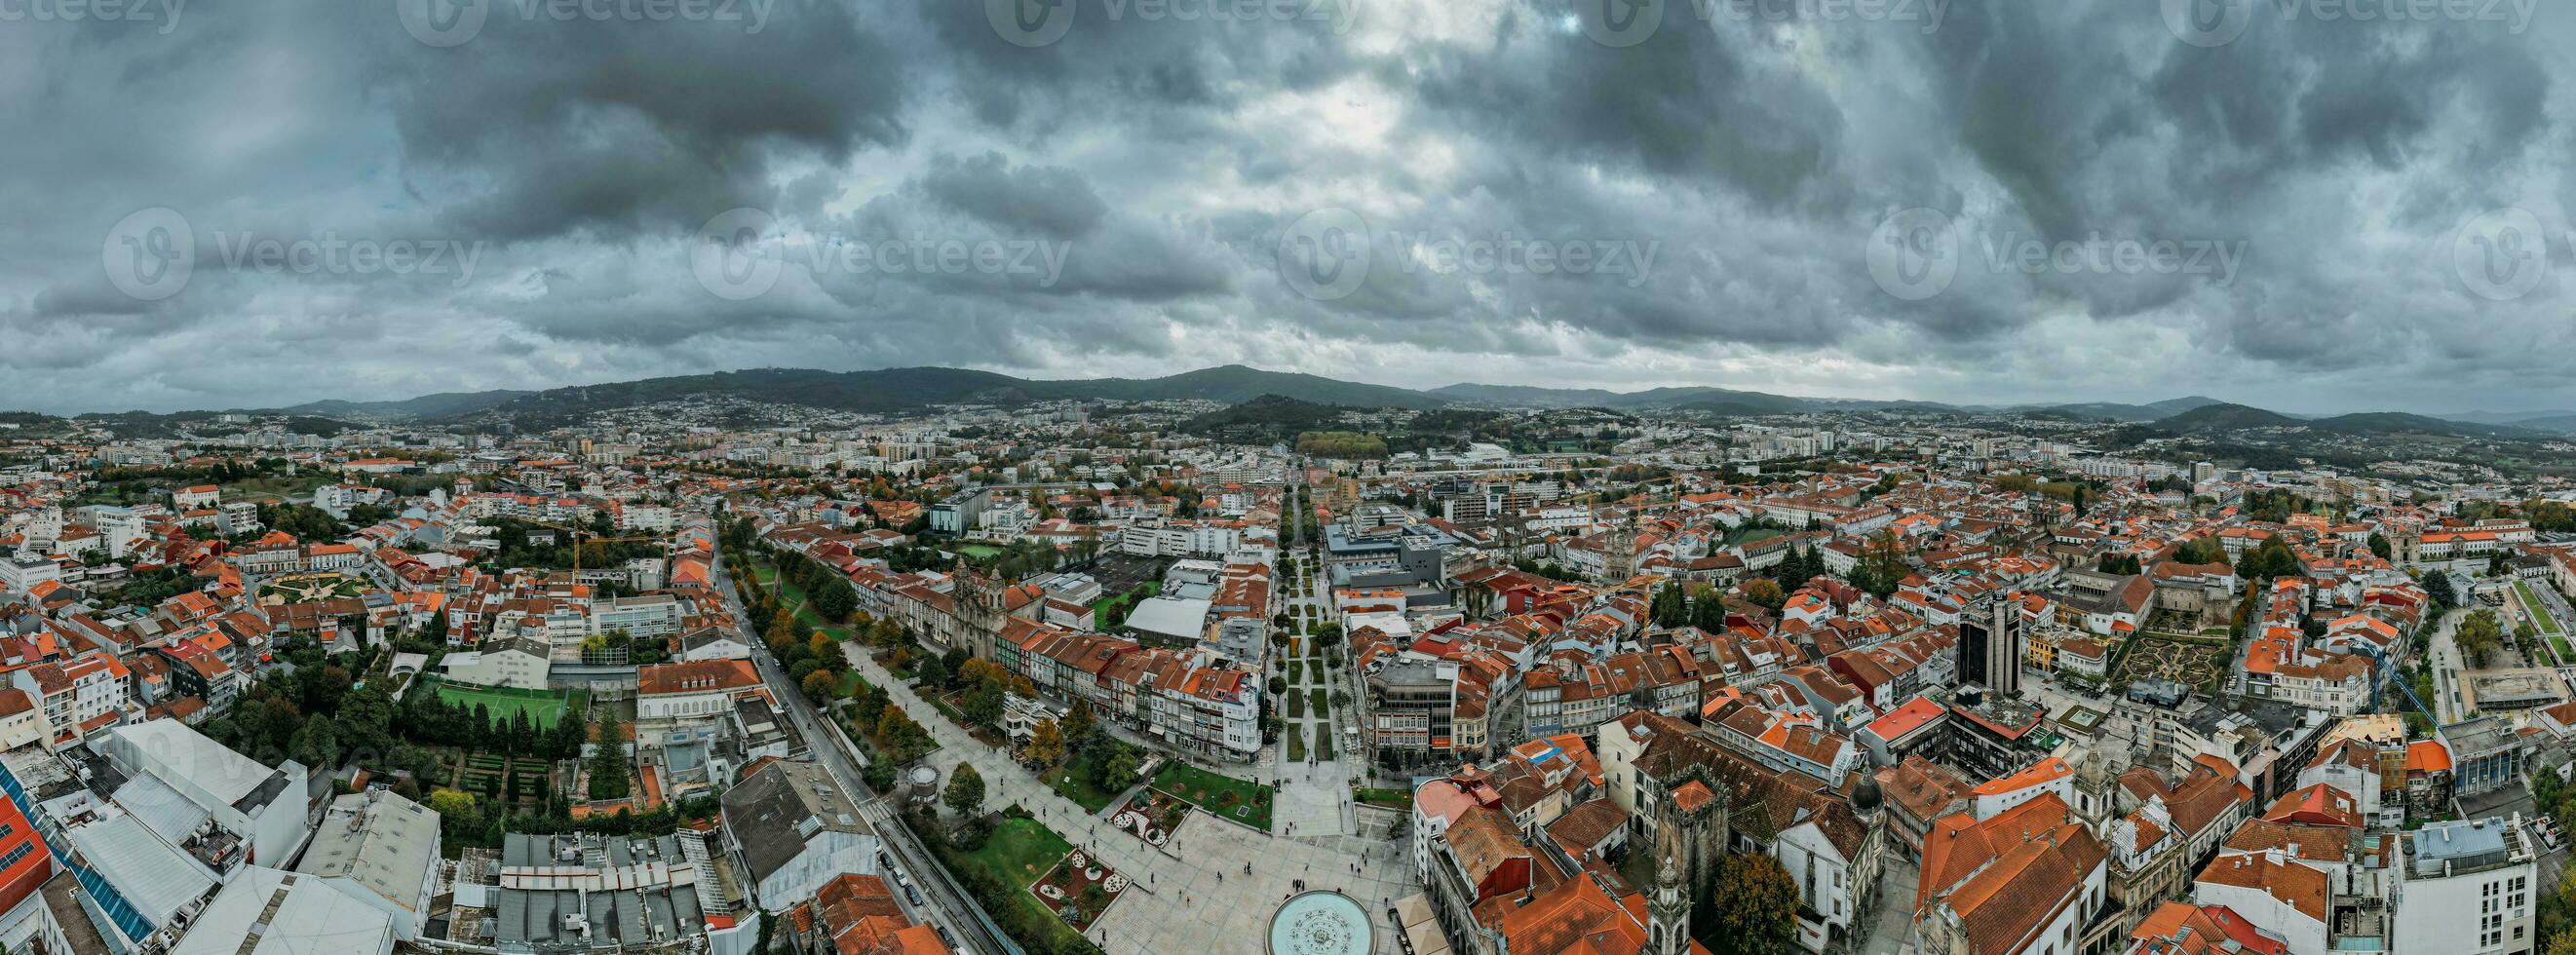 aereo fuco panoramico Visualizza di storico città di braga nel settentrionale Portogallo foto